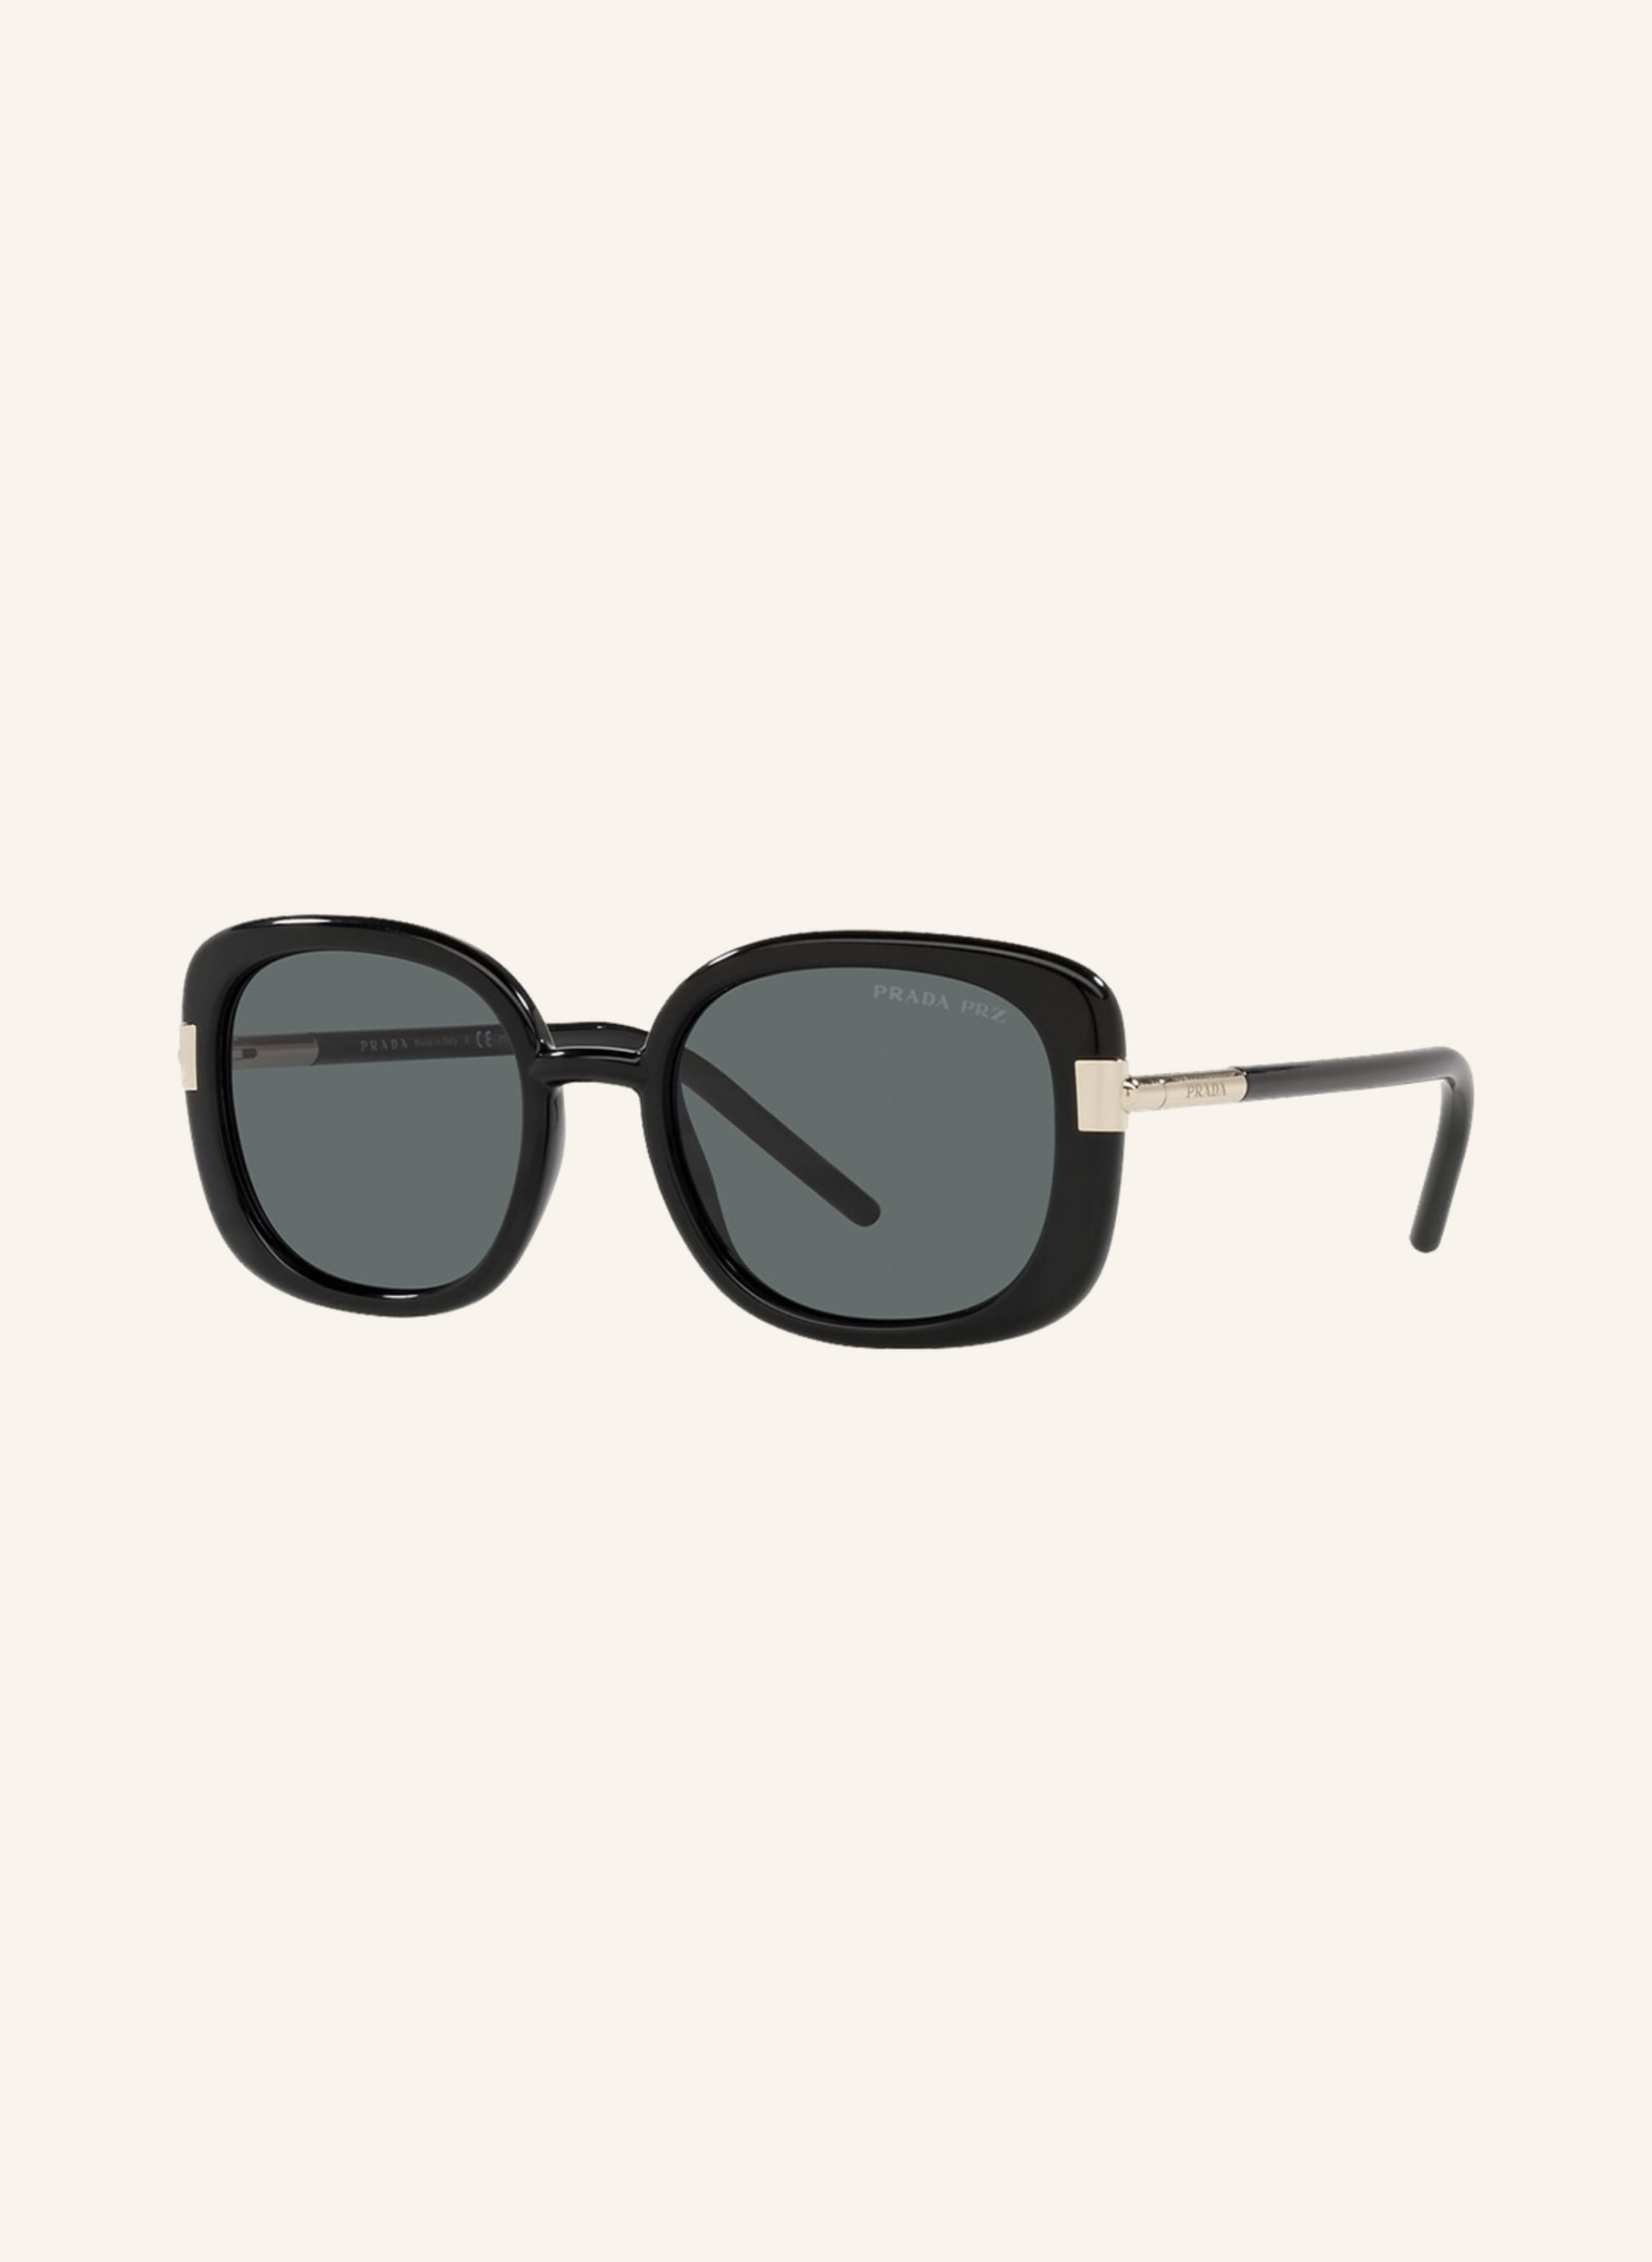 PRADA Sunglasses PR 04WS in 1ab5z1 - black/gray polarized | Breuninger